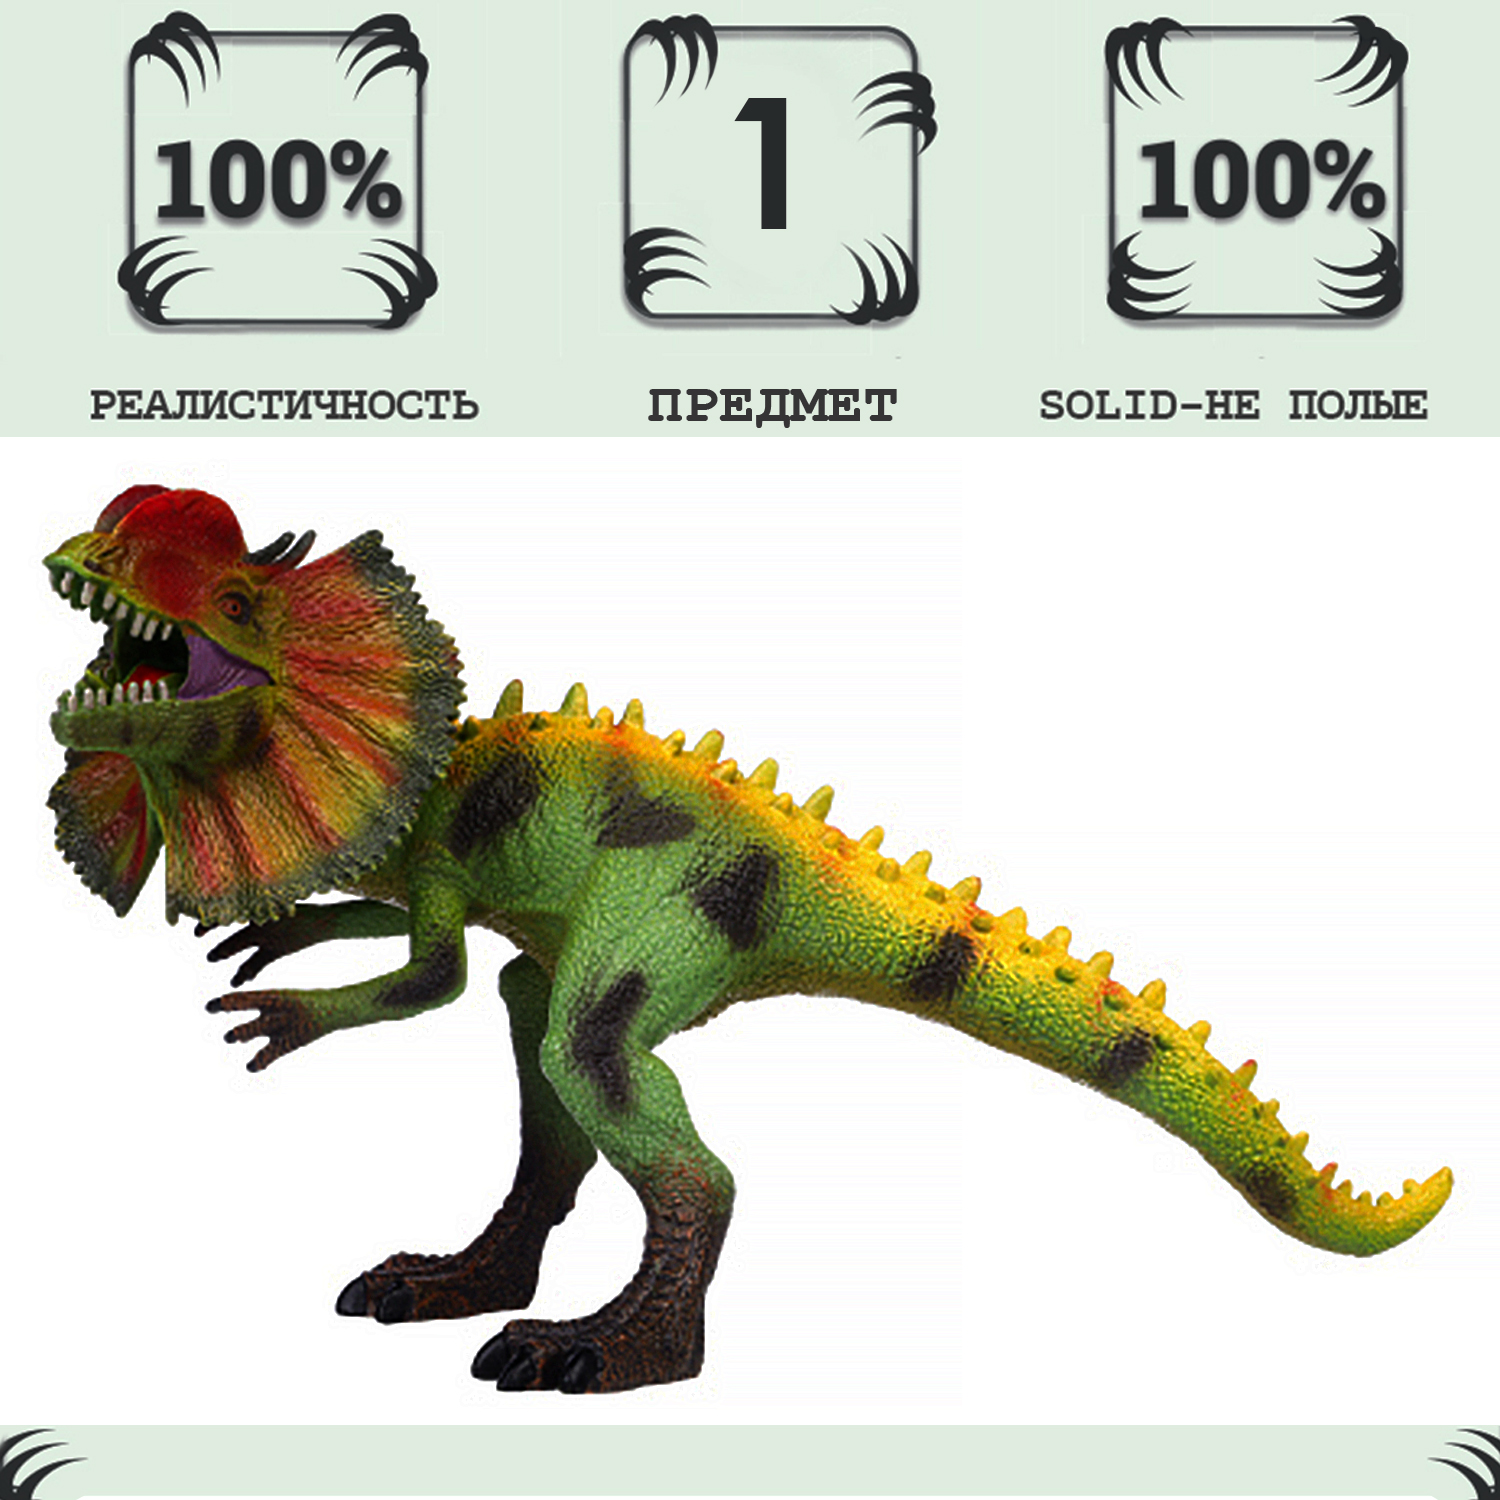 Игрушка динозавр серии Мир динозавров Masai Mara Дилофозавр MM216-087